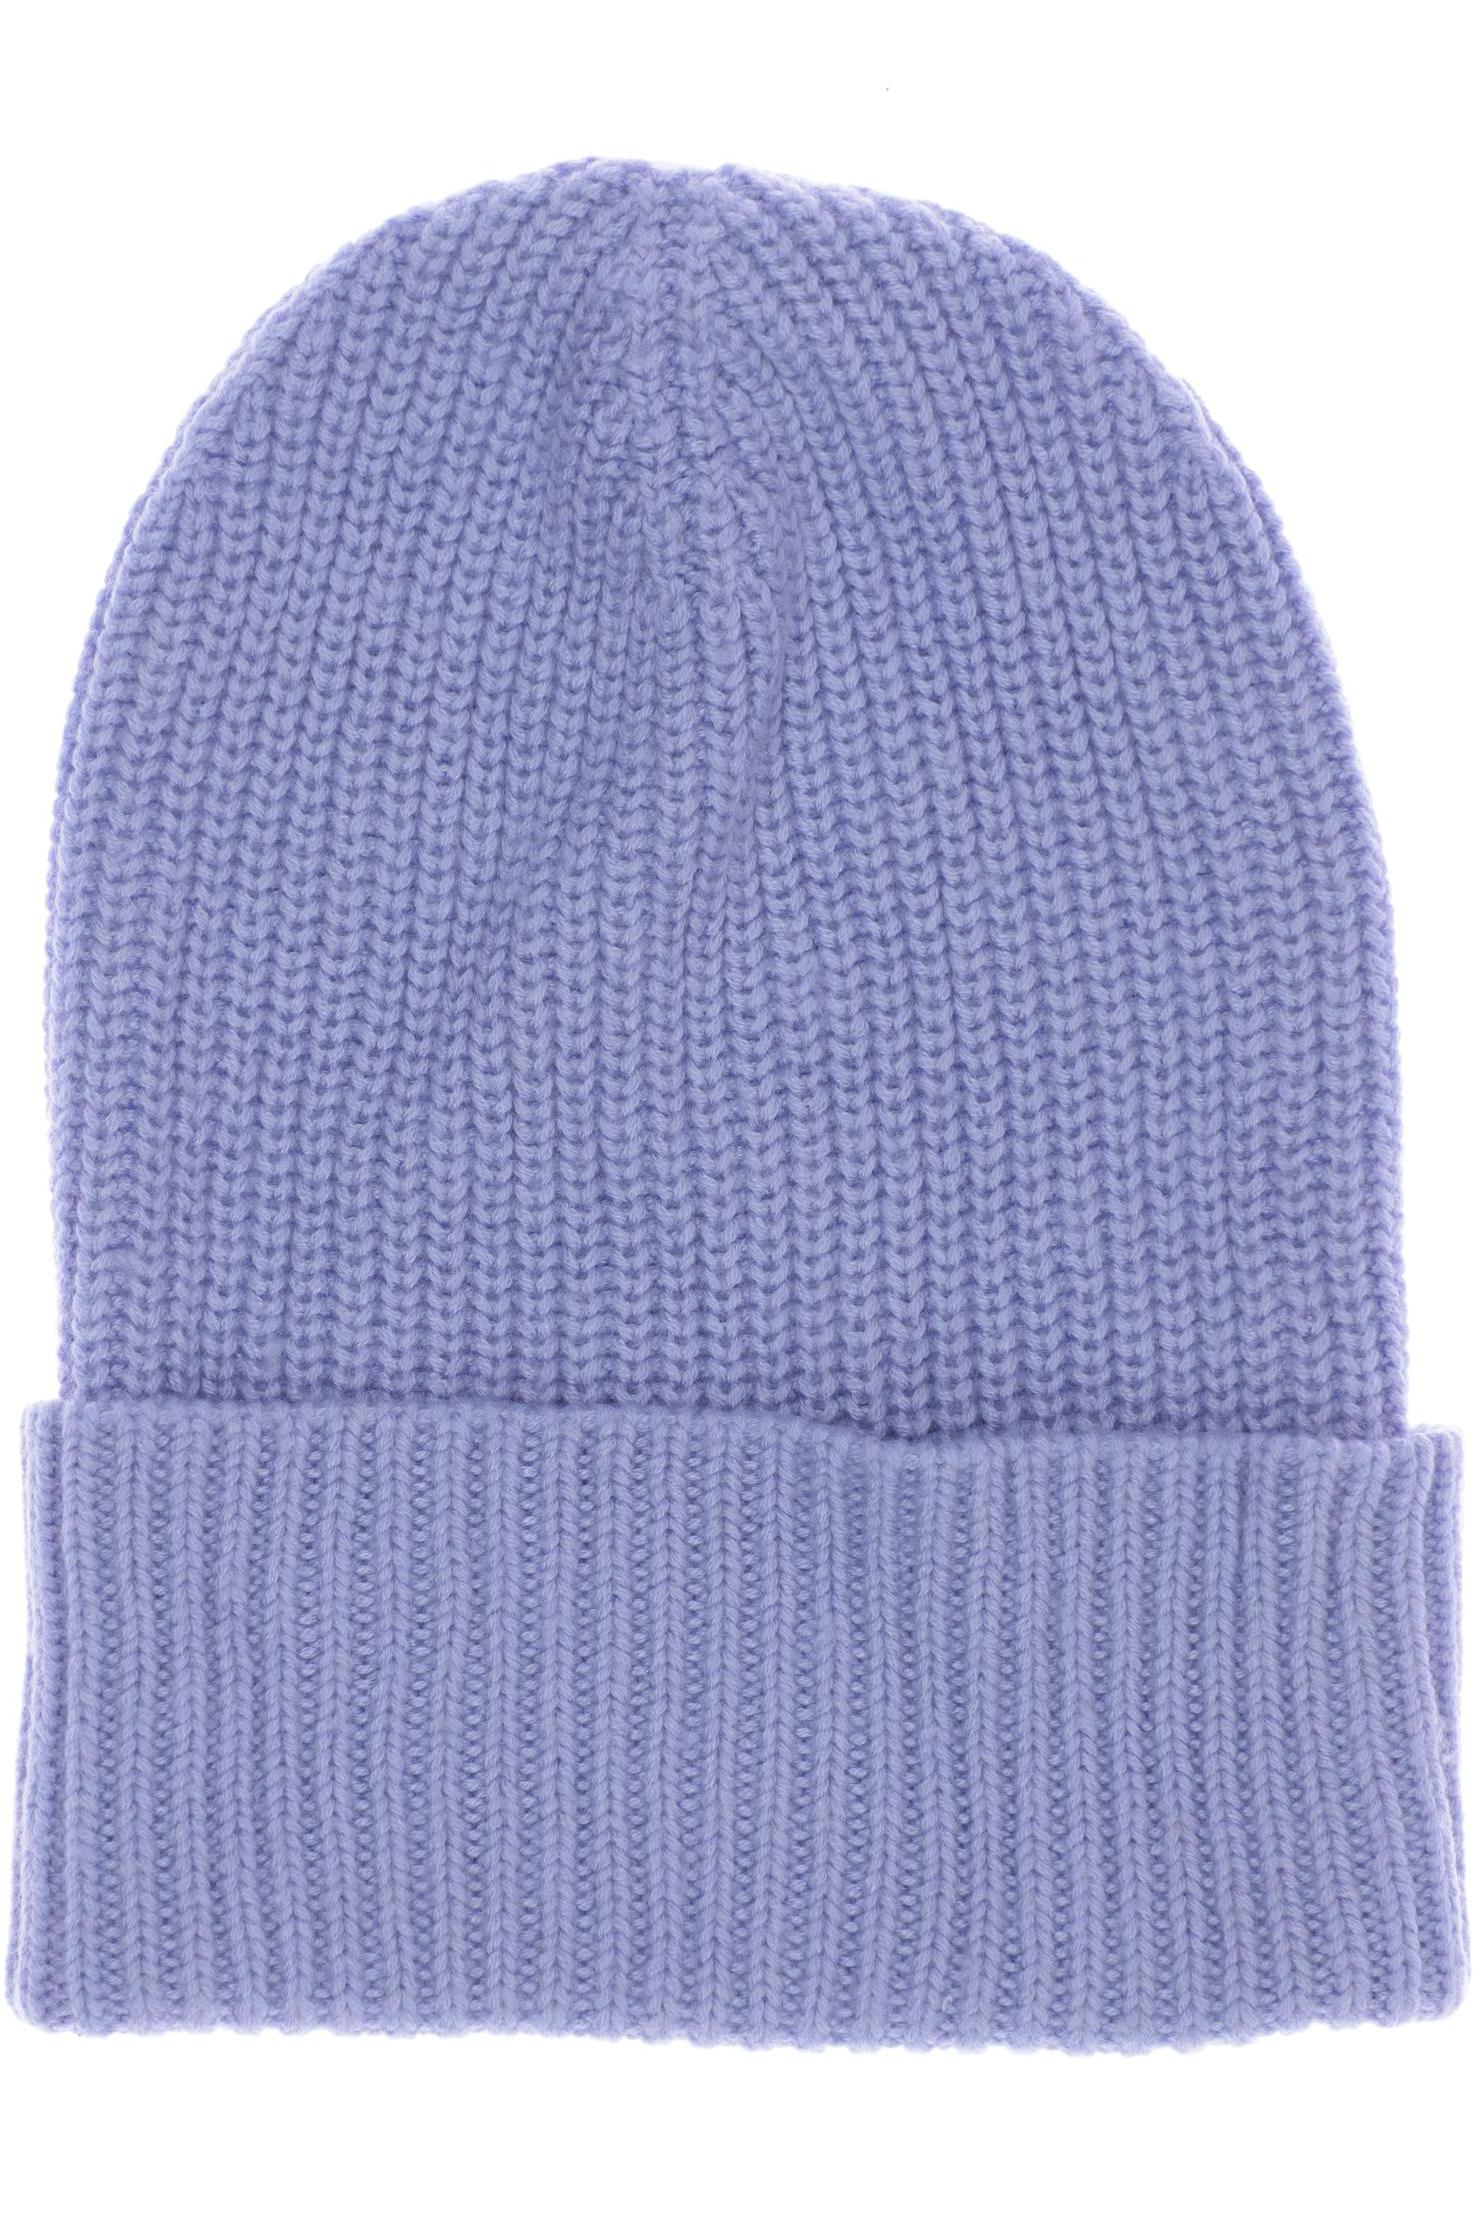 Opus Damen Hut/Mütze, hellblau von Opus